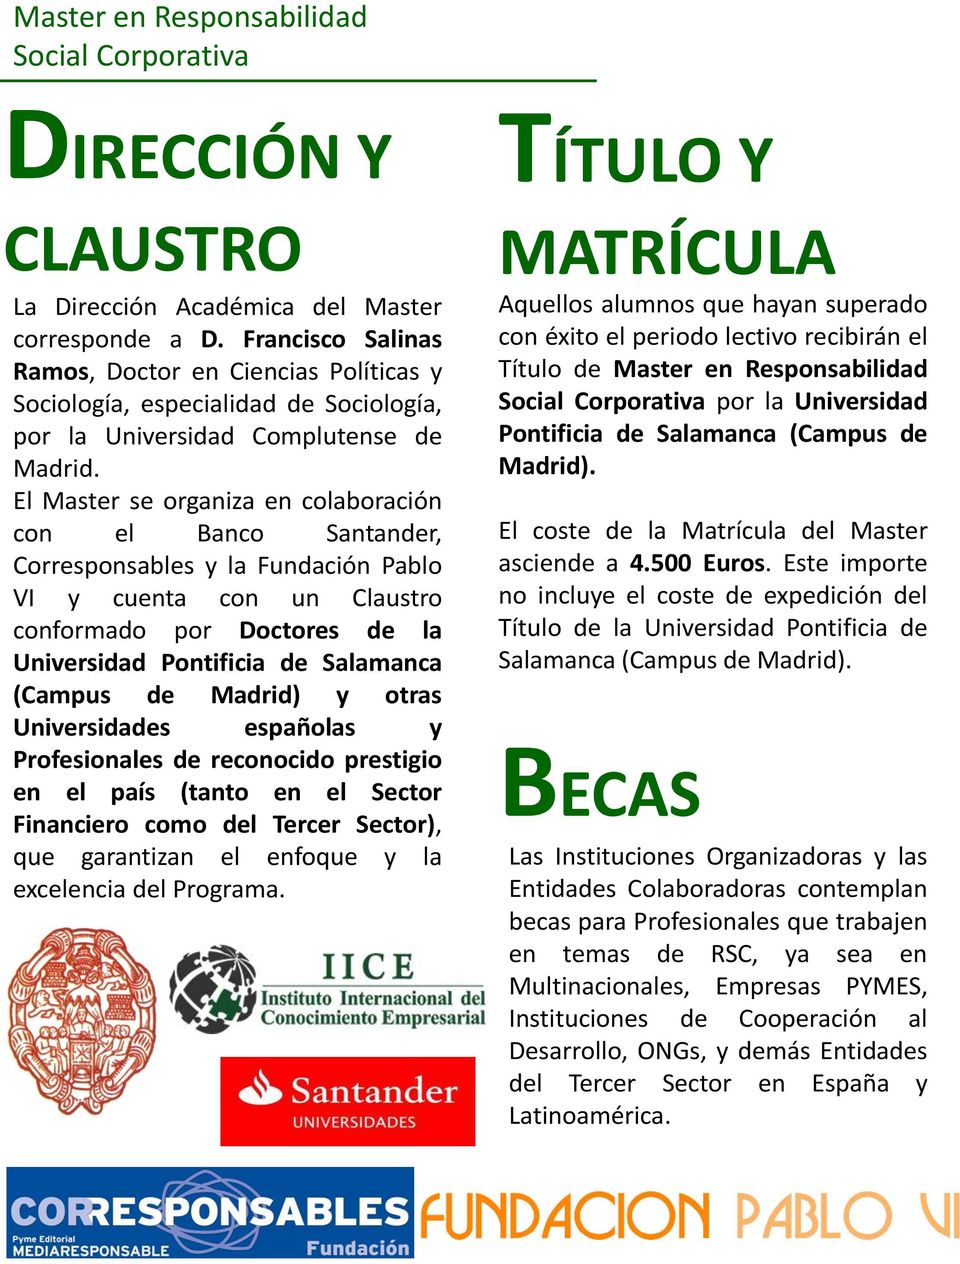 El Master se organiza en colaboración con el Banco Santander, Corresponsables y la Fundación Pablo VI y cuenta con un Claustro conformado por Doctores de la Universidad Pontificia de Salamanca